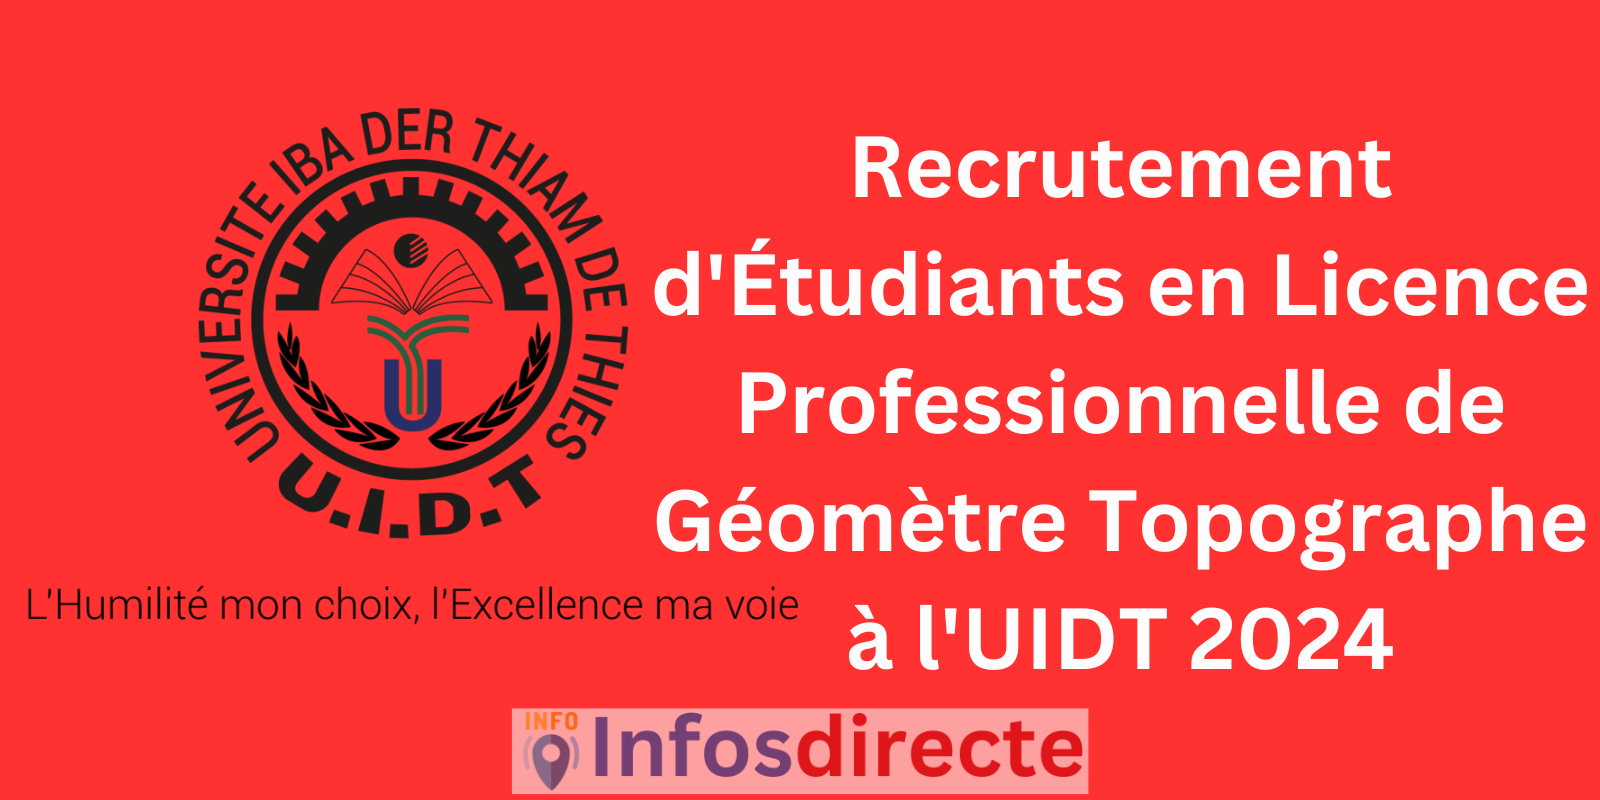 Recrutement d'Étudiants en Licence Professionnelle de Géomètre Topographe à l'UIDT 2024